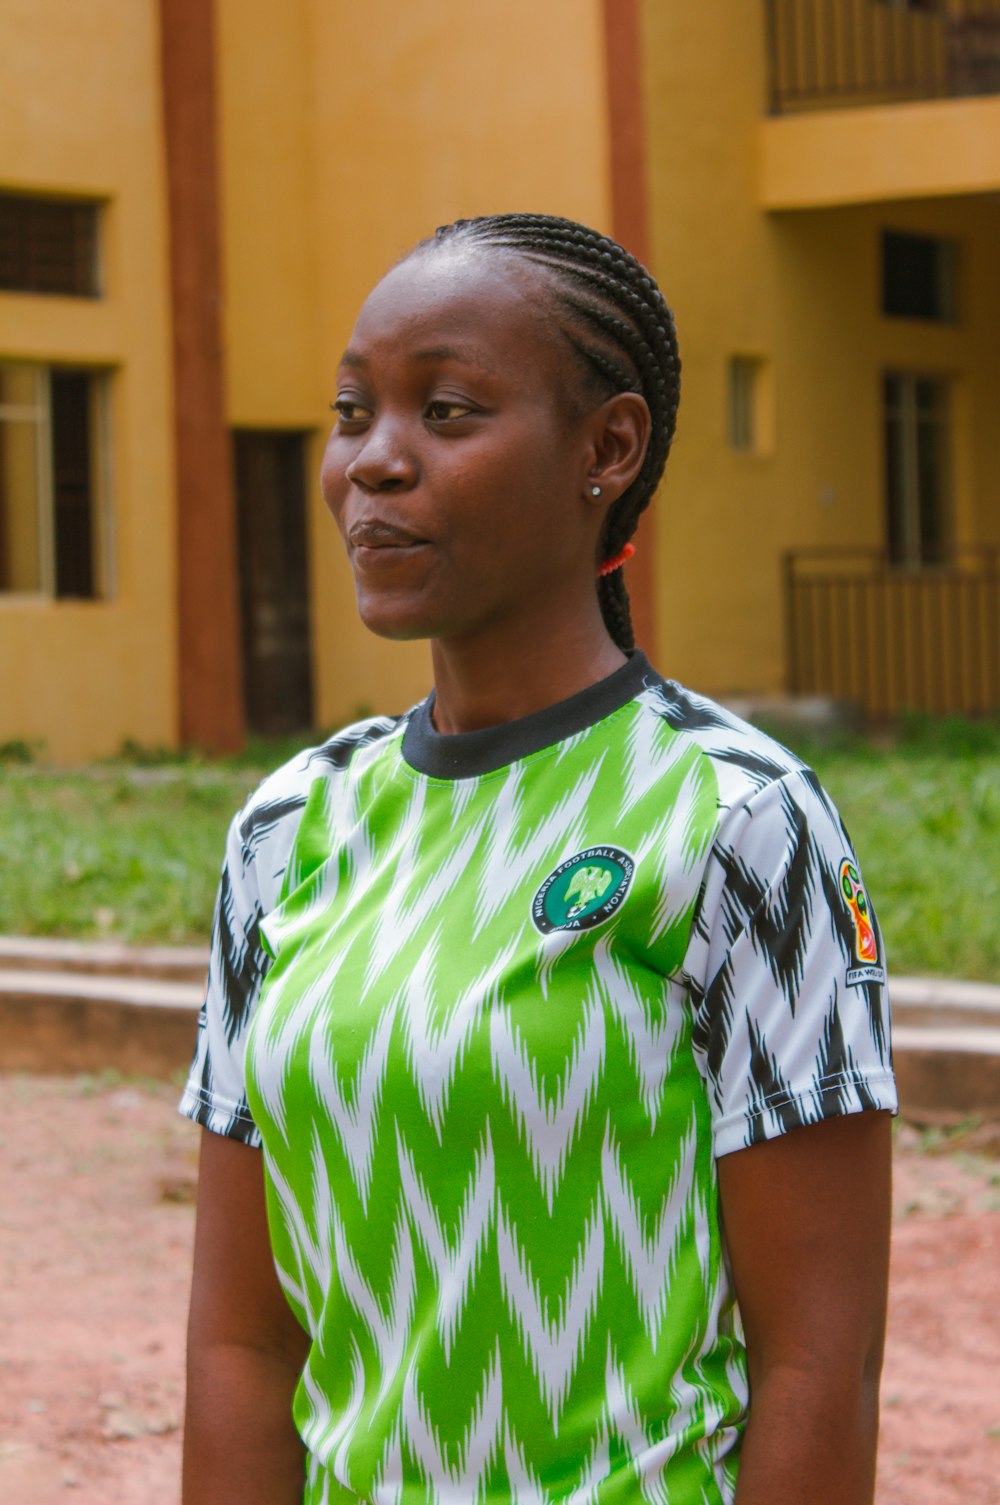 Foto niño con camiseta de fútbol adidas verde y blanca – Imagen Nigeria  gratis en Unsplash